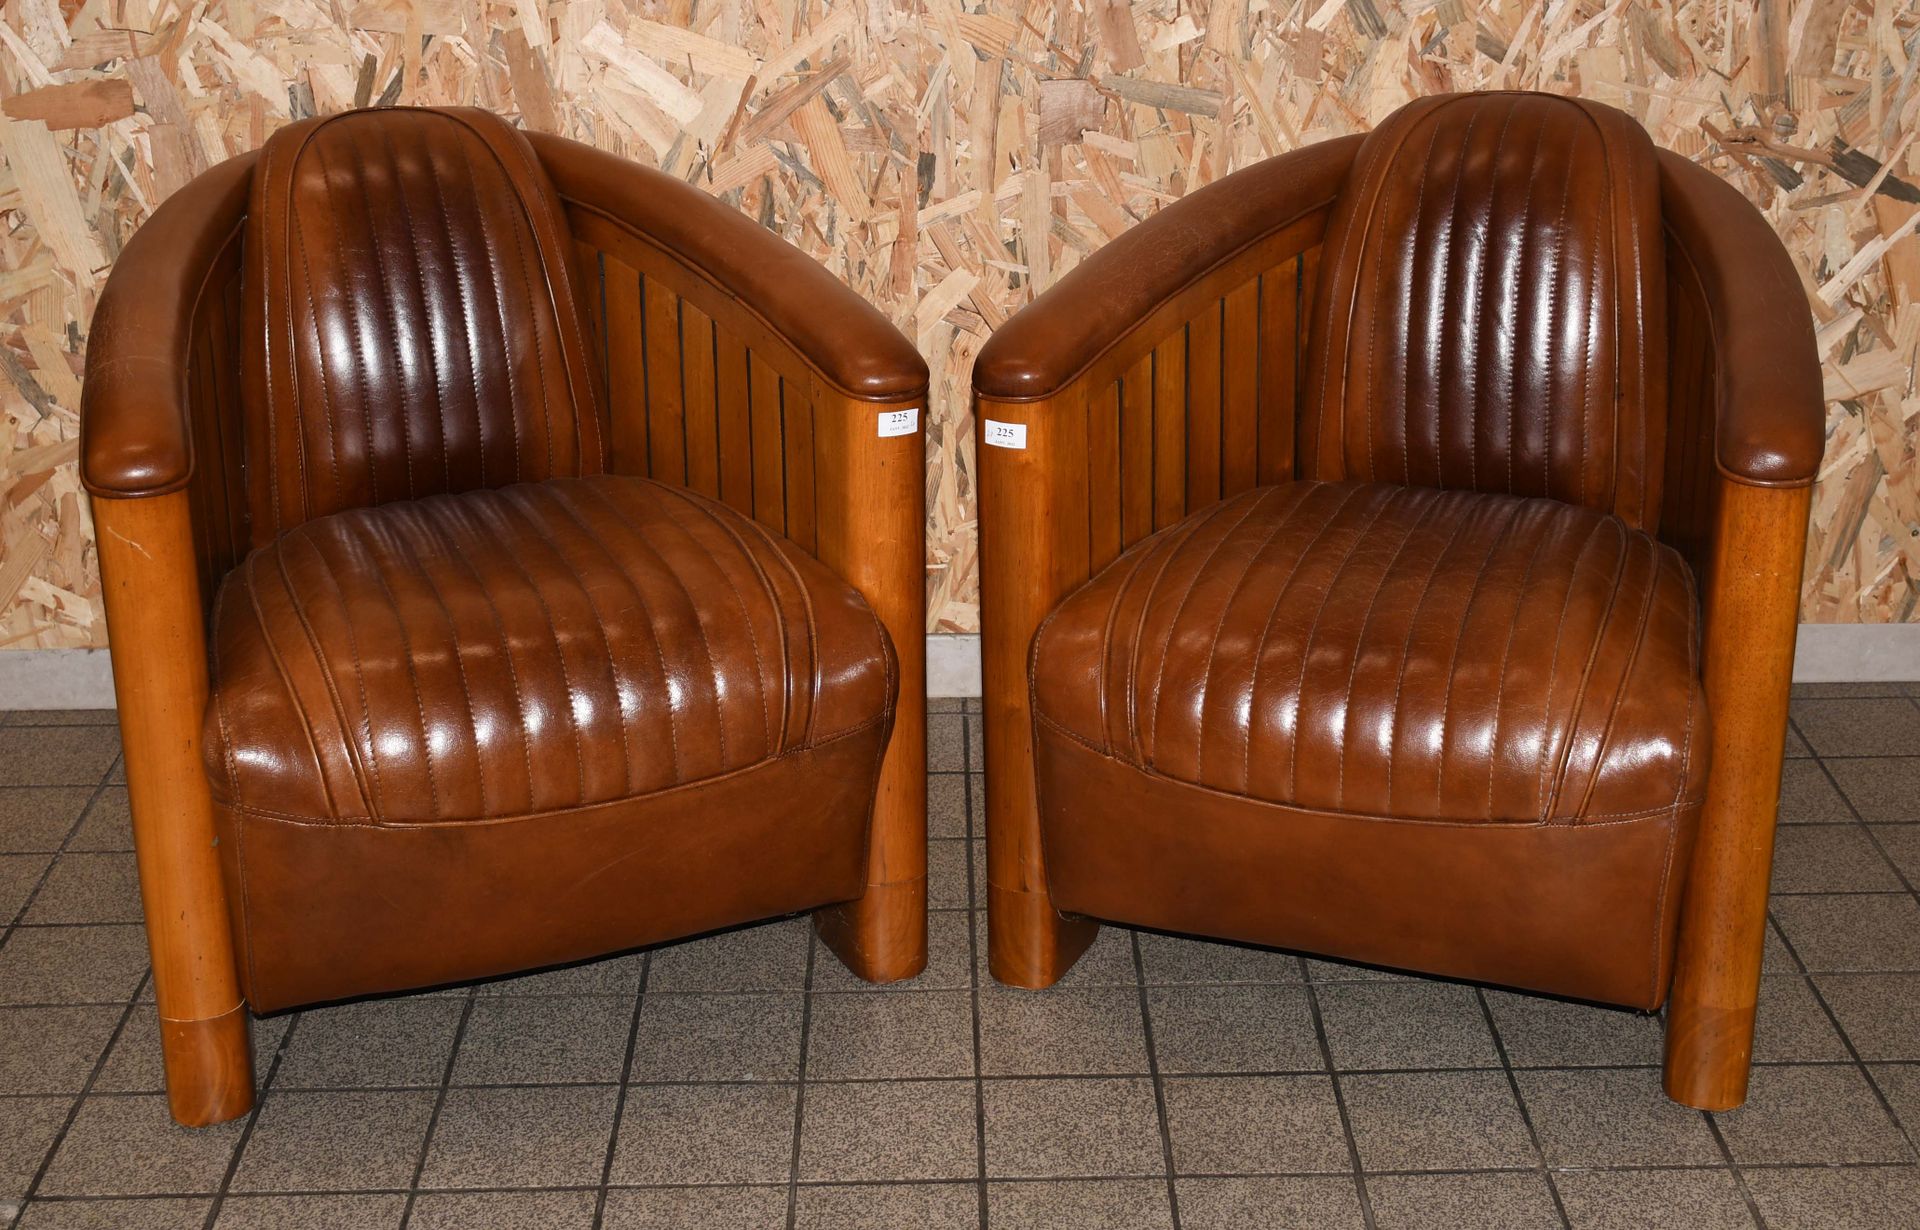 Null D’après Ron Arad

Paire de fauteuils clubs “aviator” en teck et cuir brun.